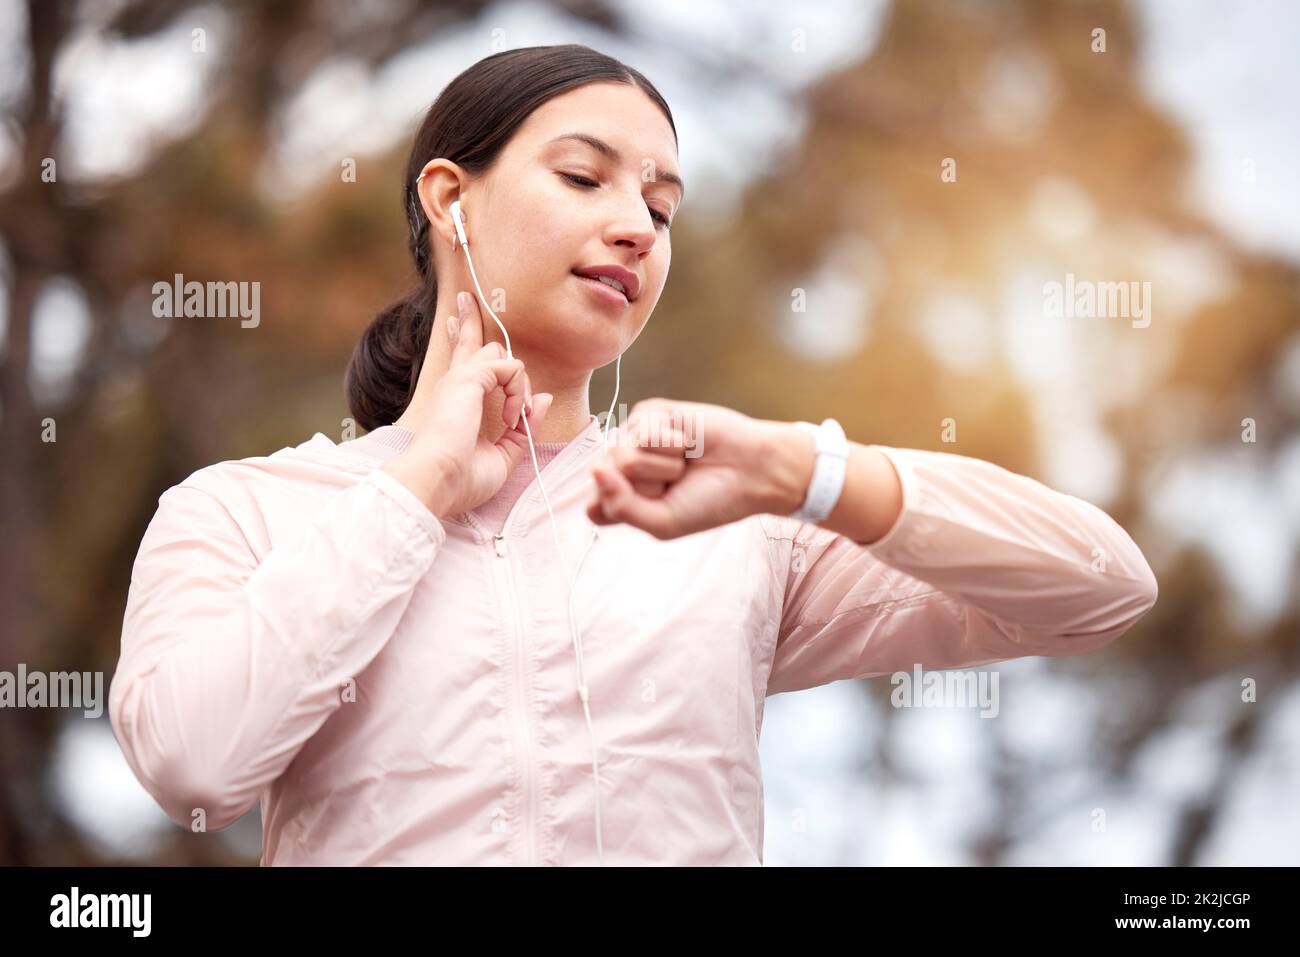 Aufrechterhaltung eines gesunden Lebensstils. Aufnahme einer jungen Frau, die ihren Puls während des Trainings in der Natur überprüft. Stockfoto